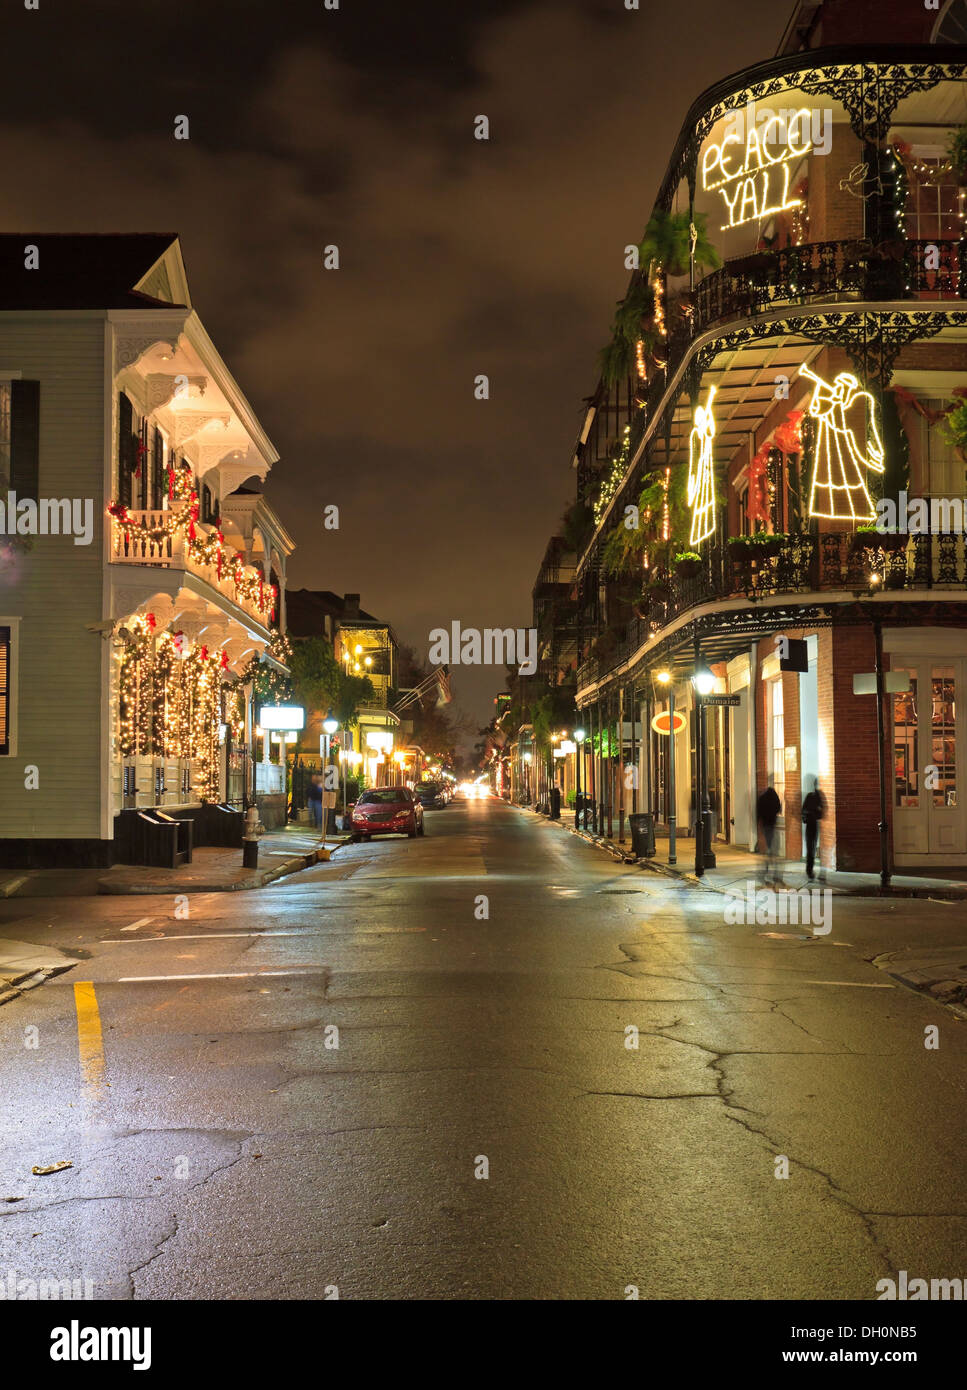 Les lumières de Noël sur l'angle de la rue Royale et Dumaine dans le quartier français de La Nouvelle-Orléans Banque D'Images